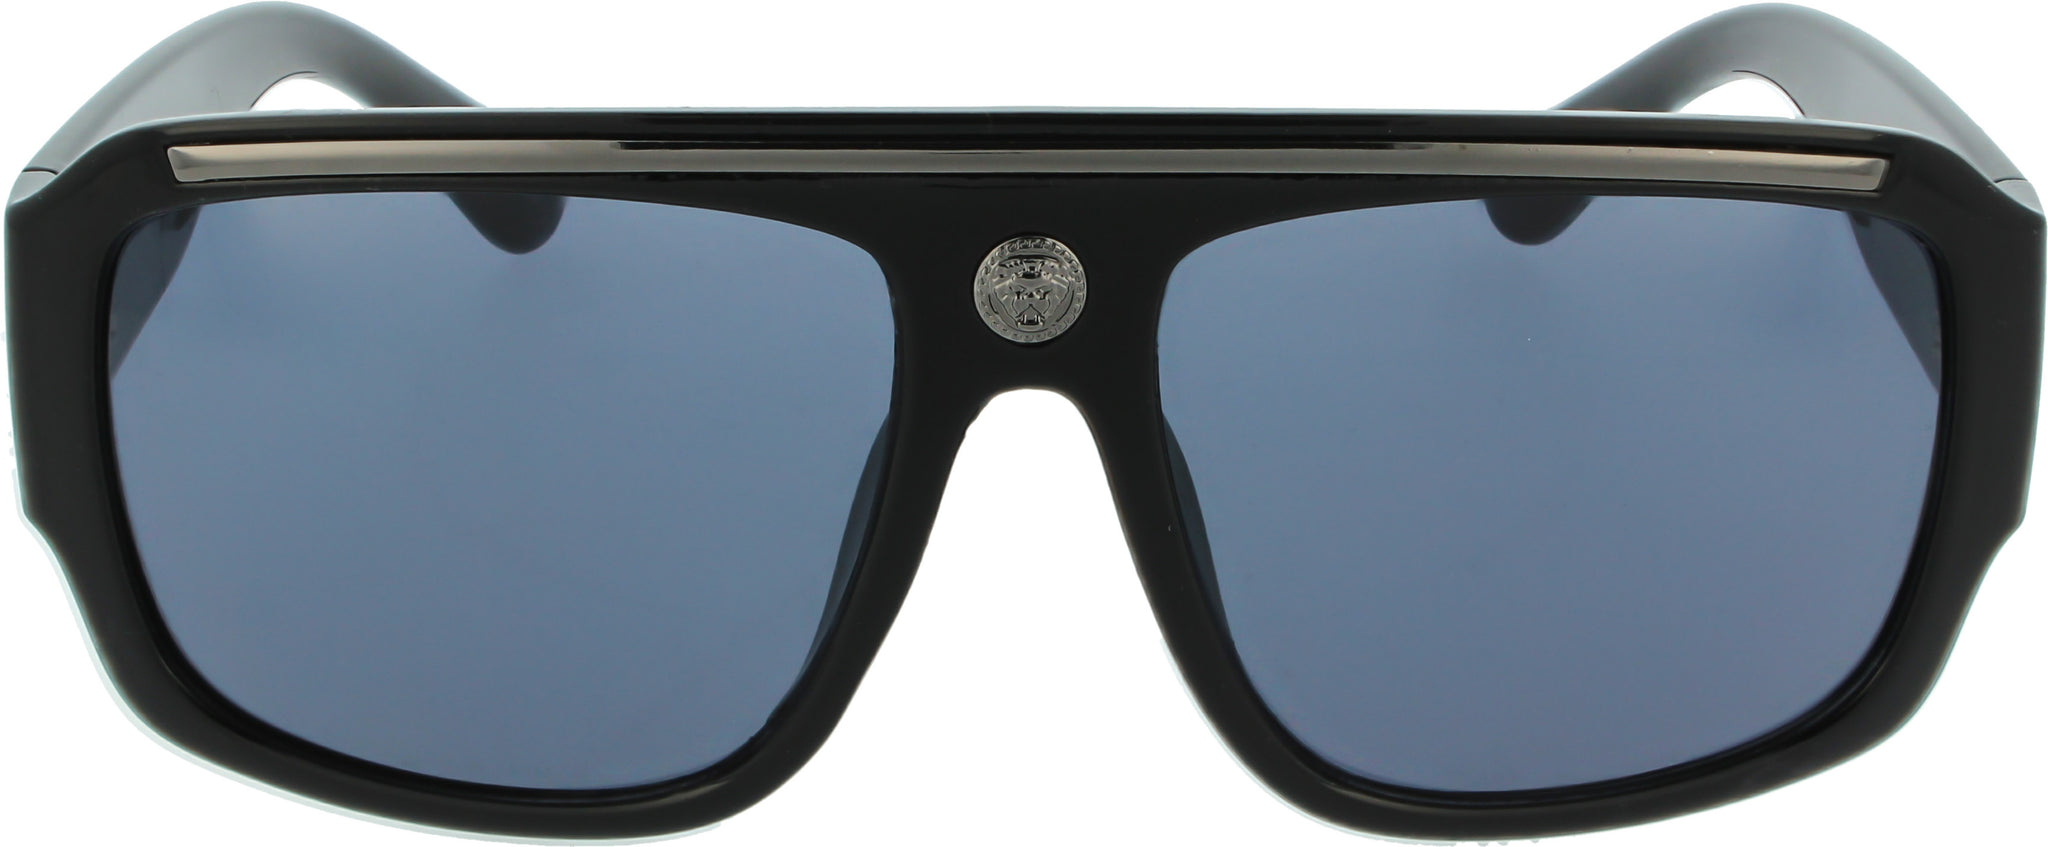 Carolina Herrera 100% UV Protection Women's Cat Eye Sunglasses | Groupon